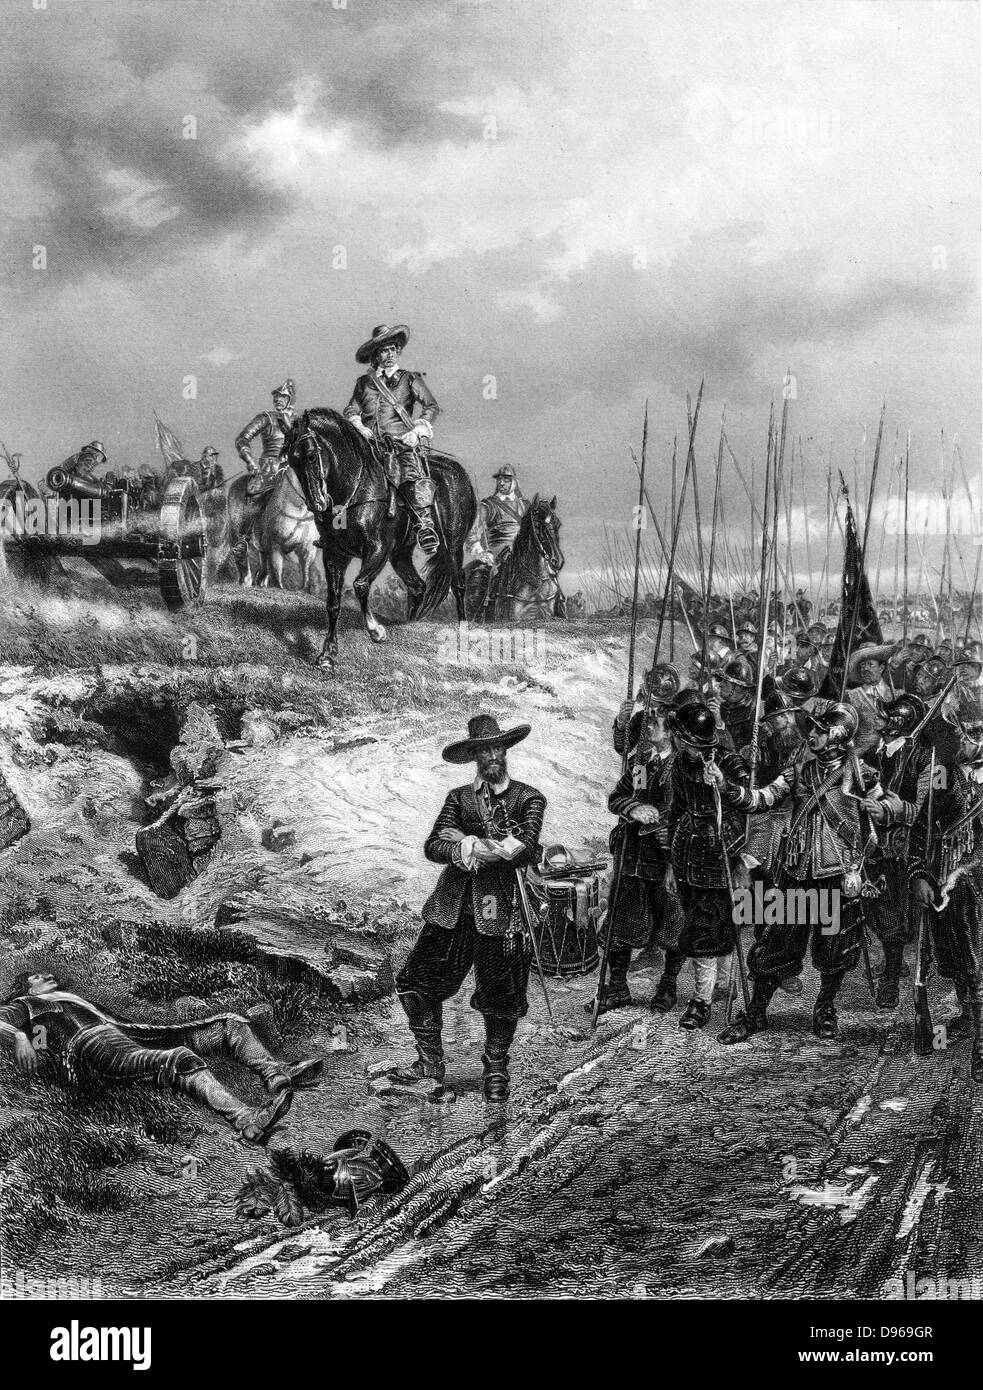 Englisch Bürgerkriege: Oliver Cromwell (1599-1658) in der Schlacht von Marston Moor, 2. Juli 1644. Parlamentarier besiegten Royalisten unter Prince Rupert. Gravur. Stockfoto